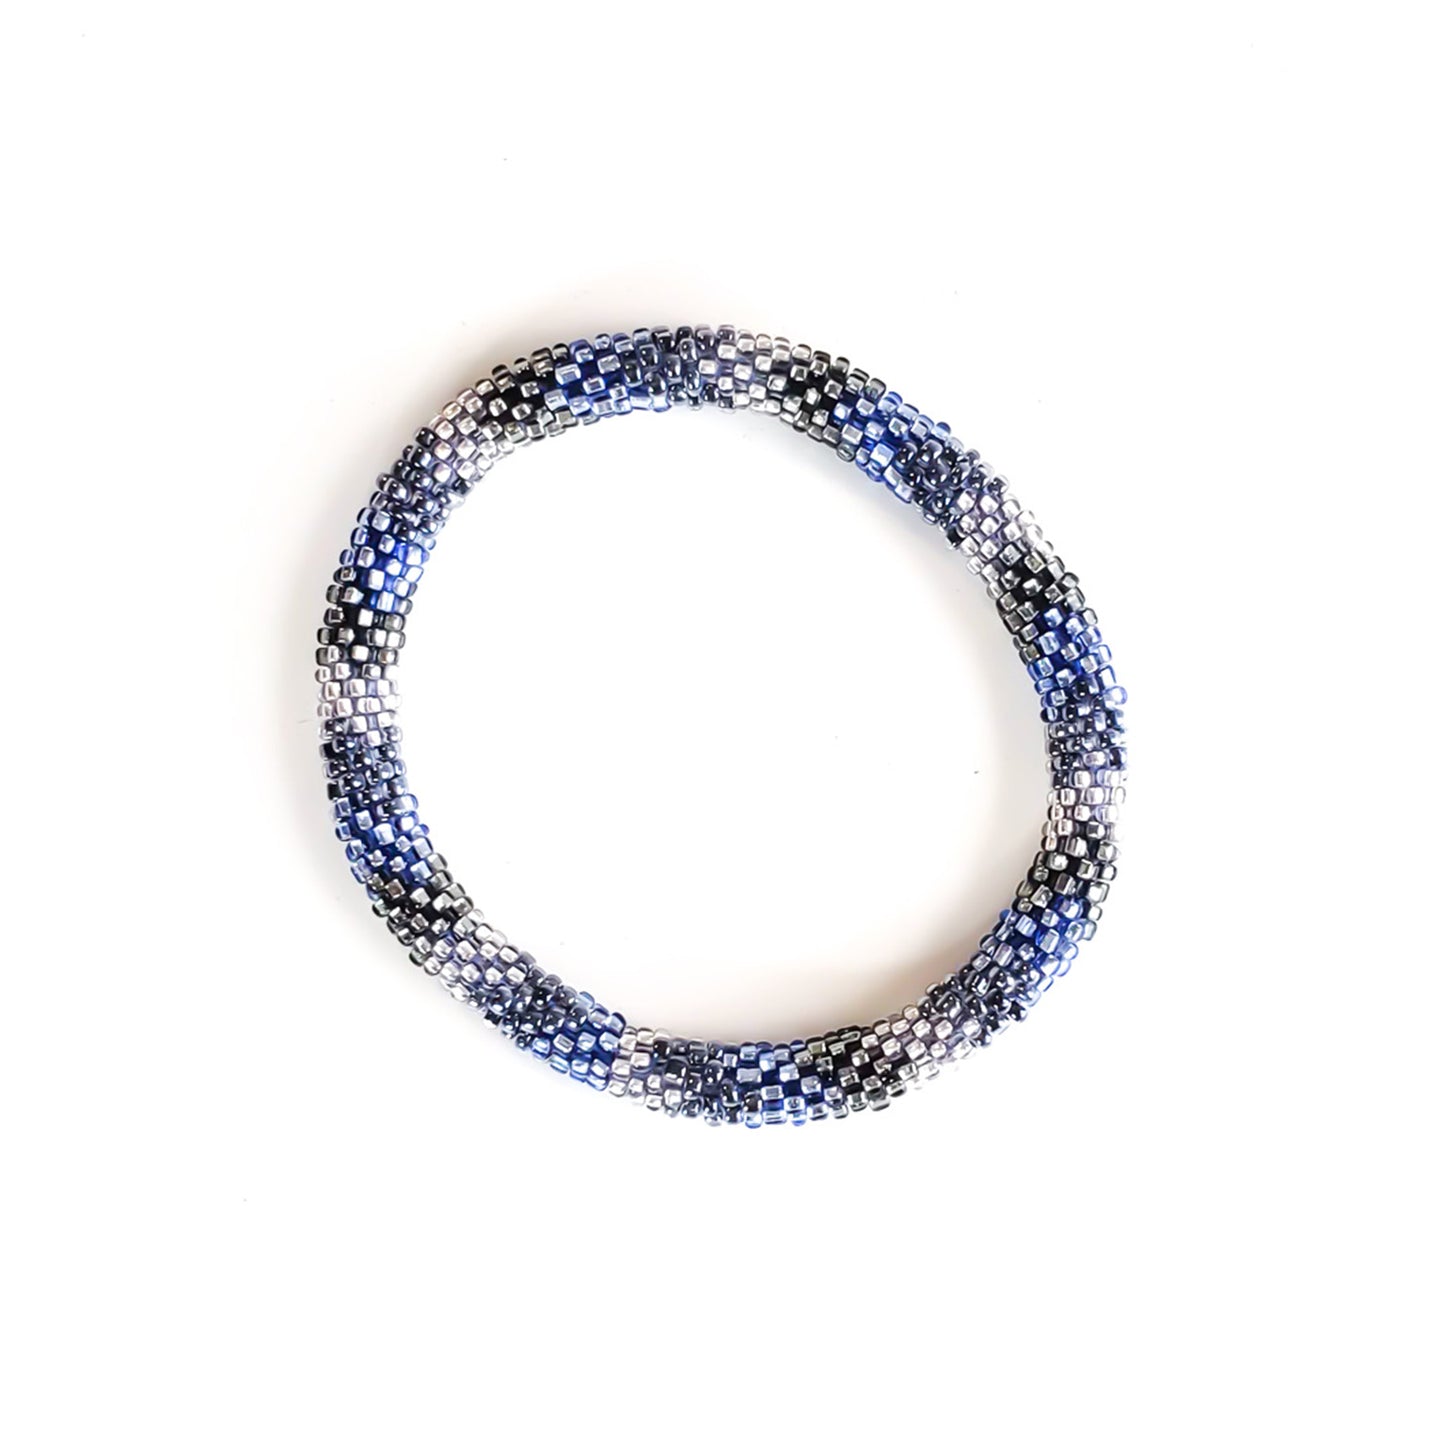 Roll-On Bracelet - Denim (Blue & White)